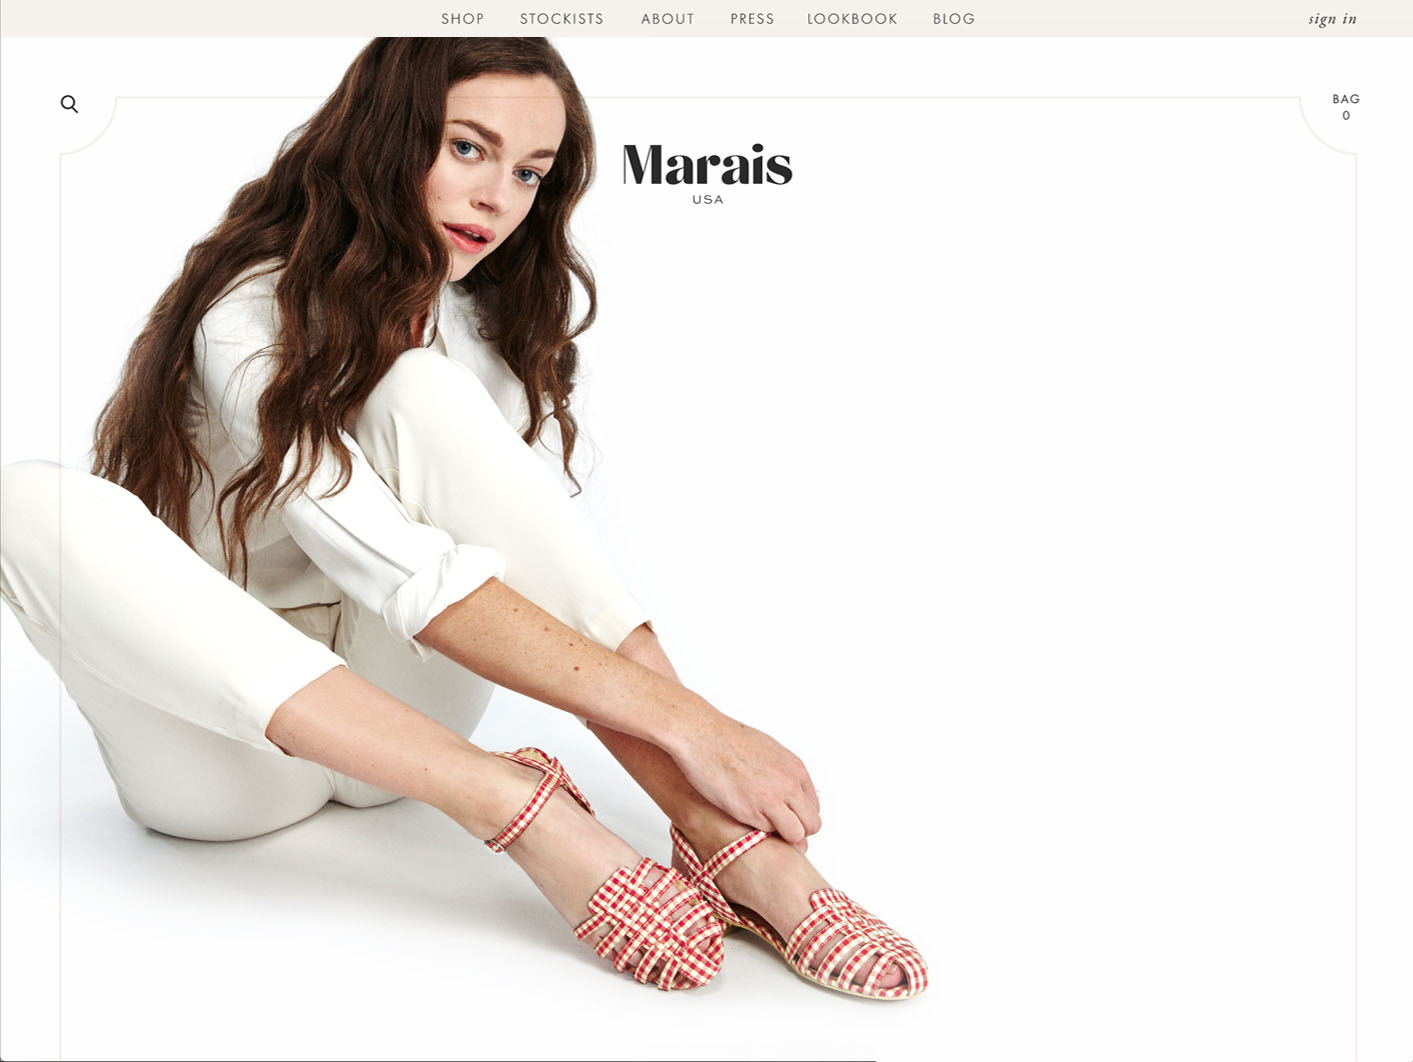 Marais website designed by Scissor.